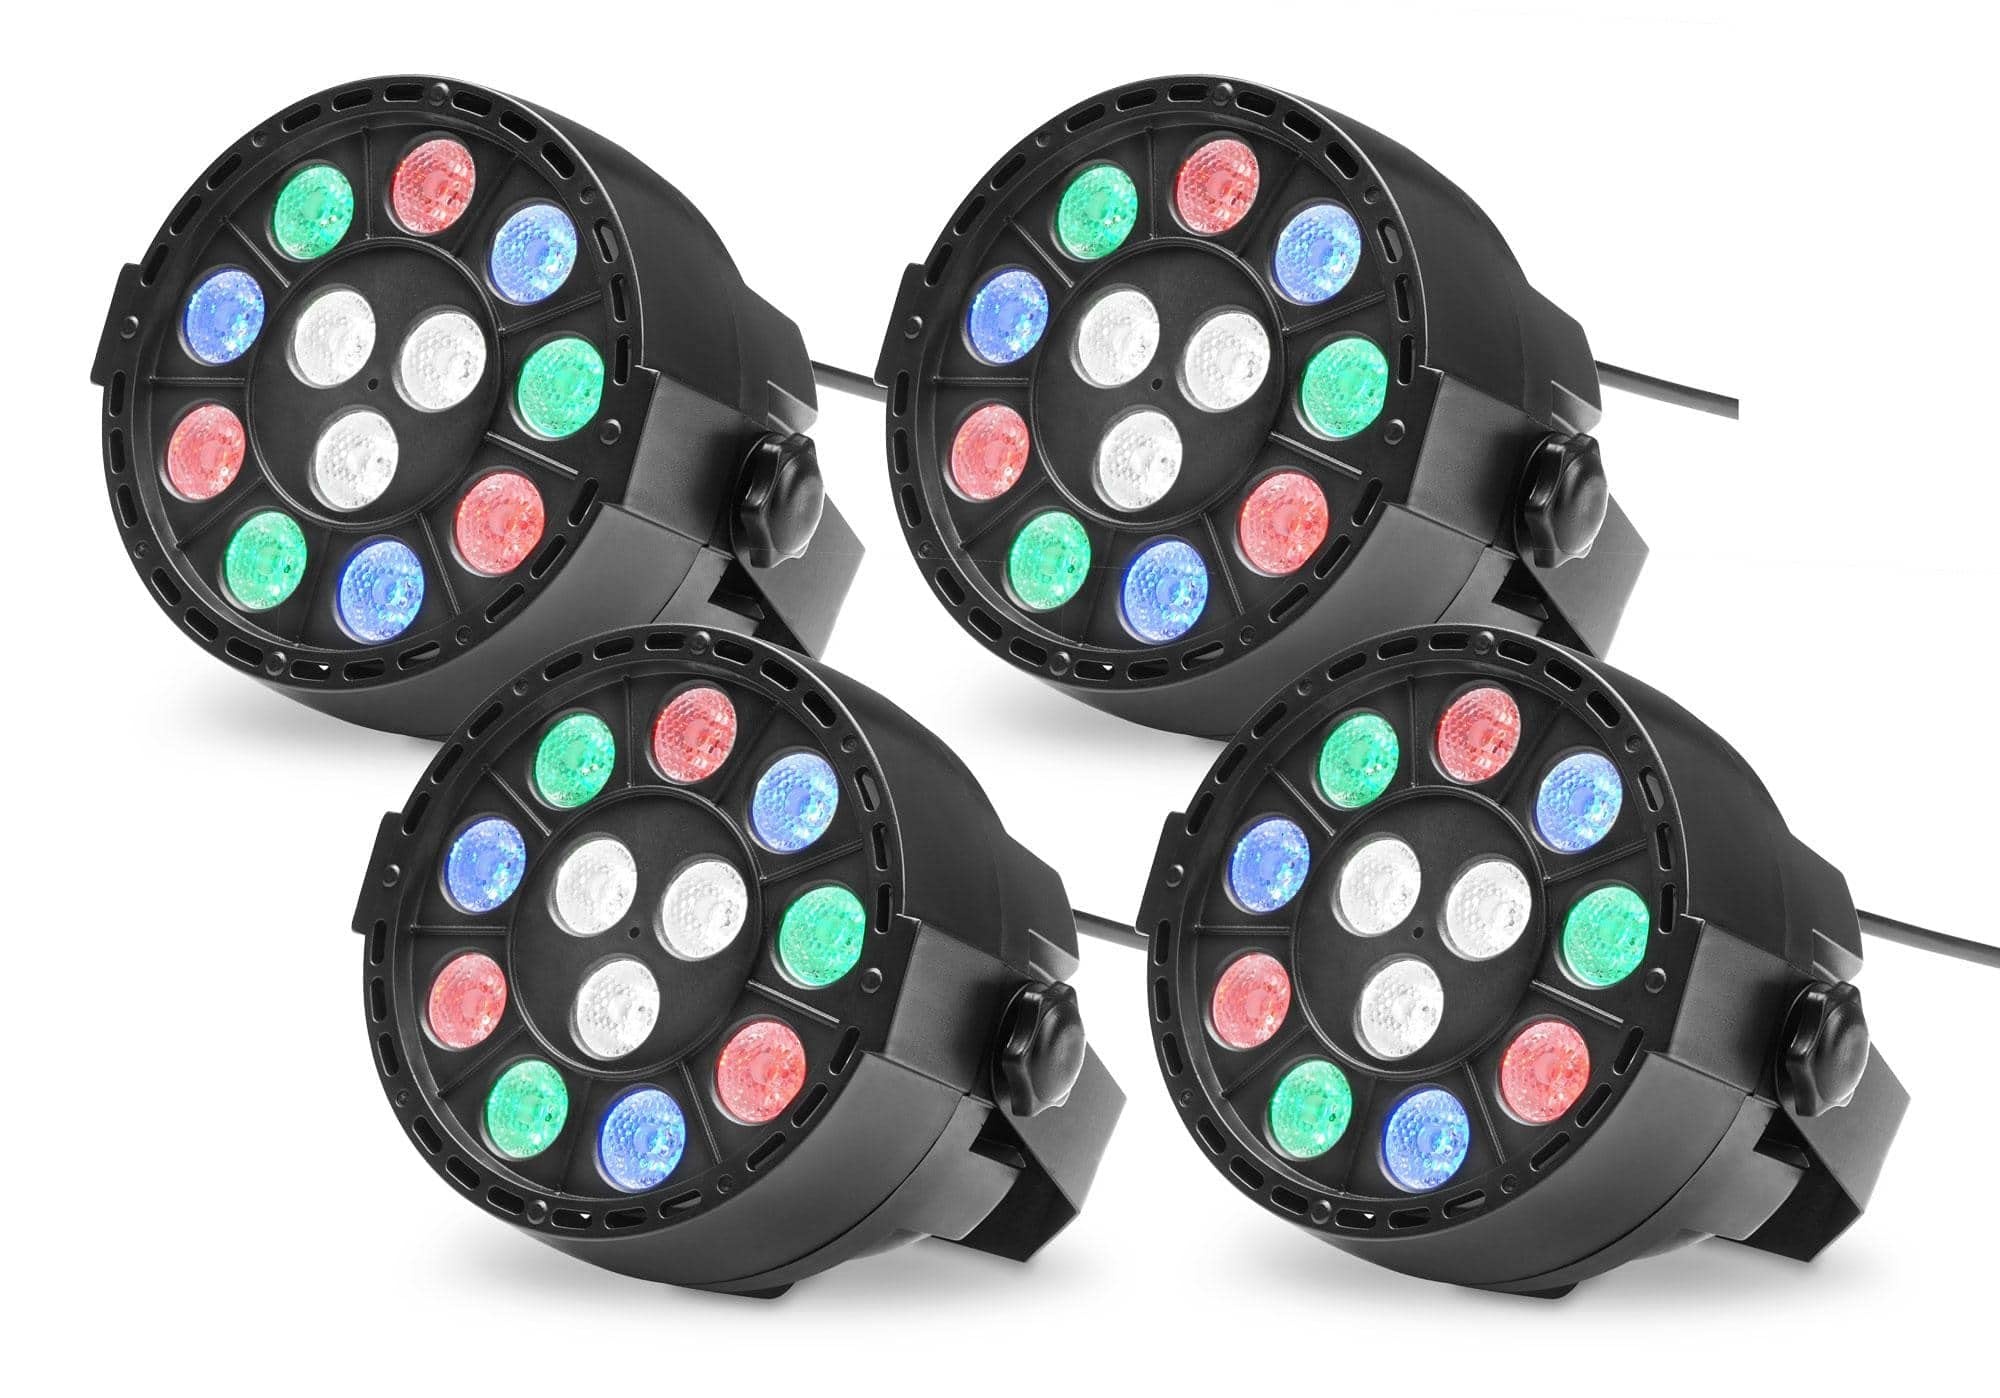 4x Showlite SPS-121 LED Smart Party Spot (3 rote, 3 grüne, 3 blaue und 3 weiße LEDs mit je 1 Watt Leistung, DMX-Betrieb möglich, klein, kompakt & leistungsstark, leiser Lüfter) Schwarz